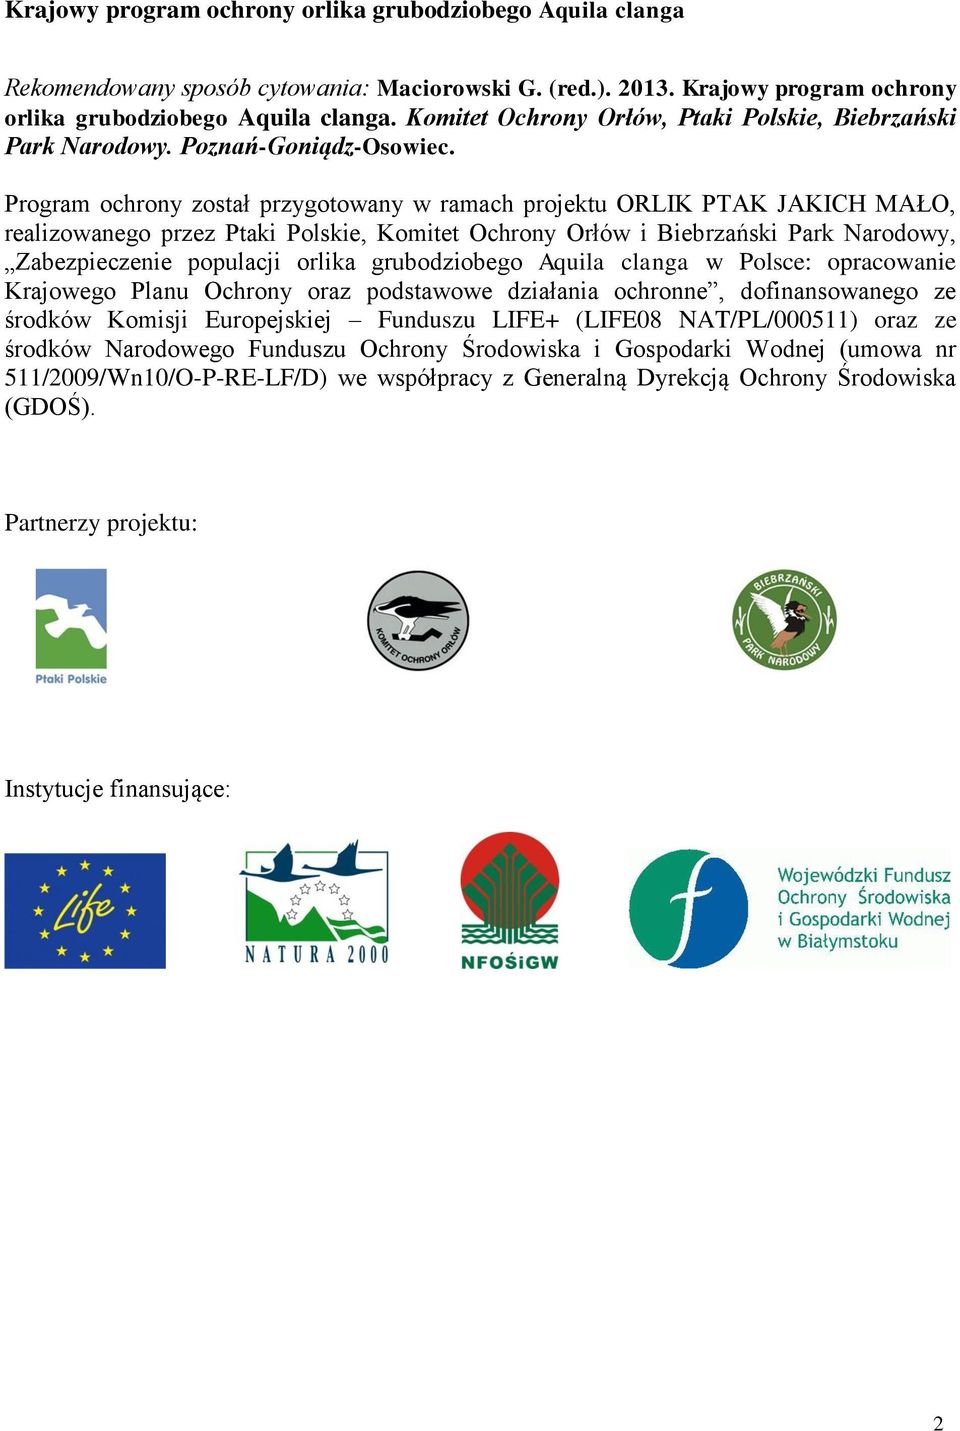 Program ochrony został przygotowany w ramach projektu ORLIK PTAK JAKICH MAŁO, realizowanego przez Ptaki Polskie, Komitet Ochrony Orłów i Biebrzański Park Narodowy, Zabezpieczenie populacji orlika